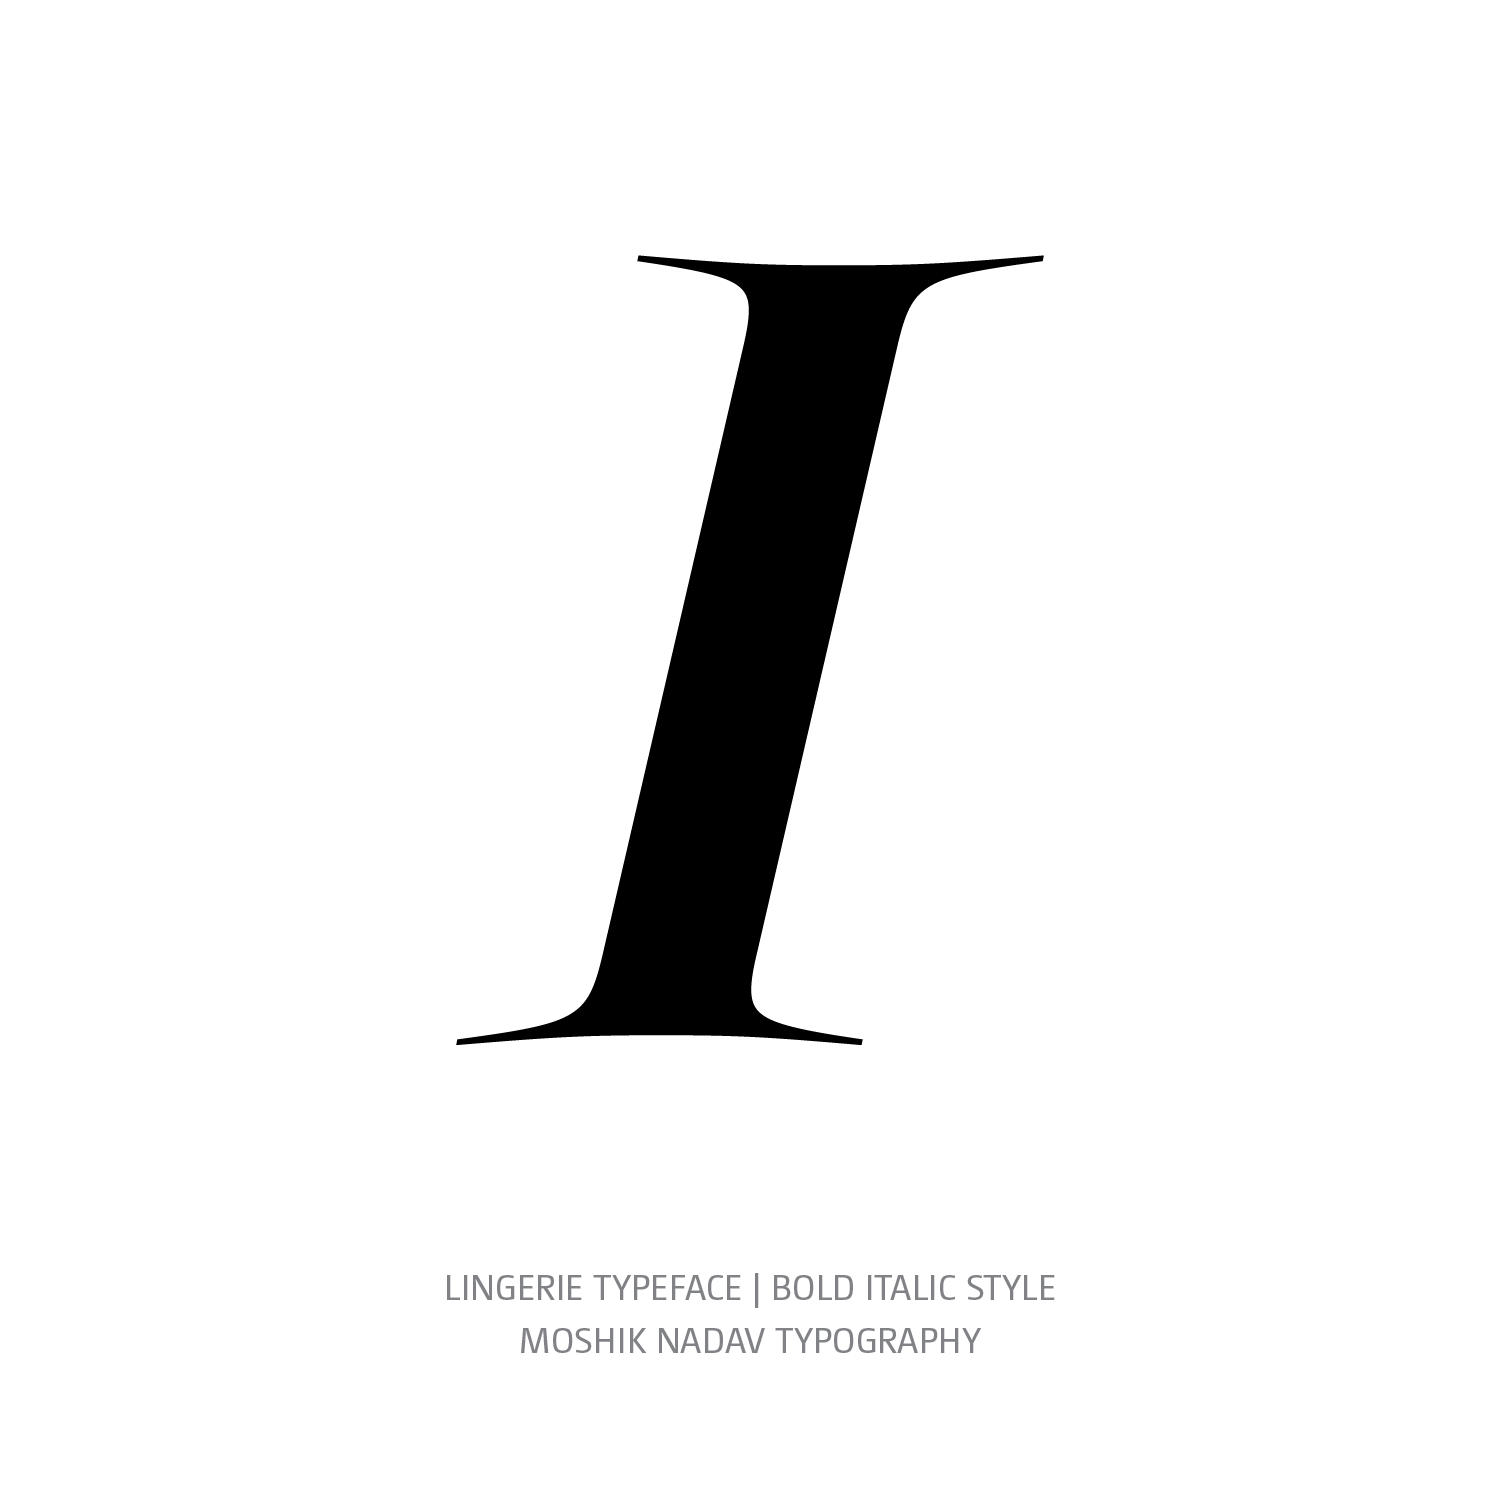 Lingerie Typeface Bold Italic I